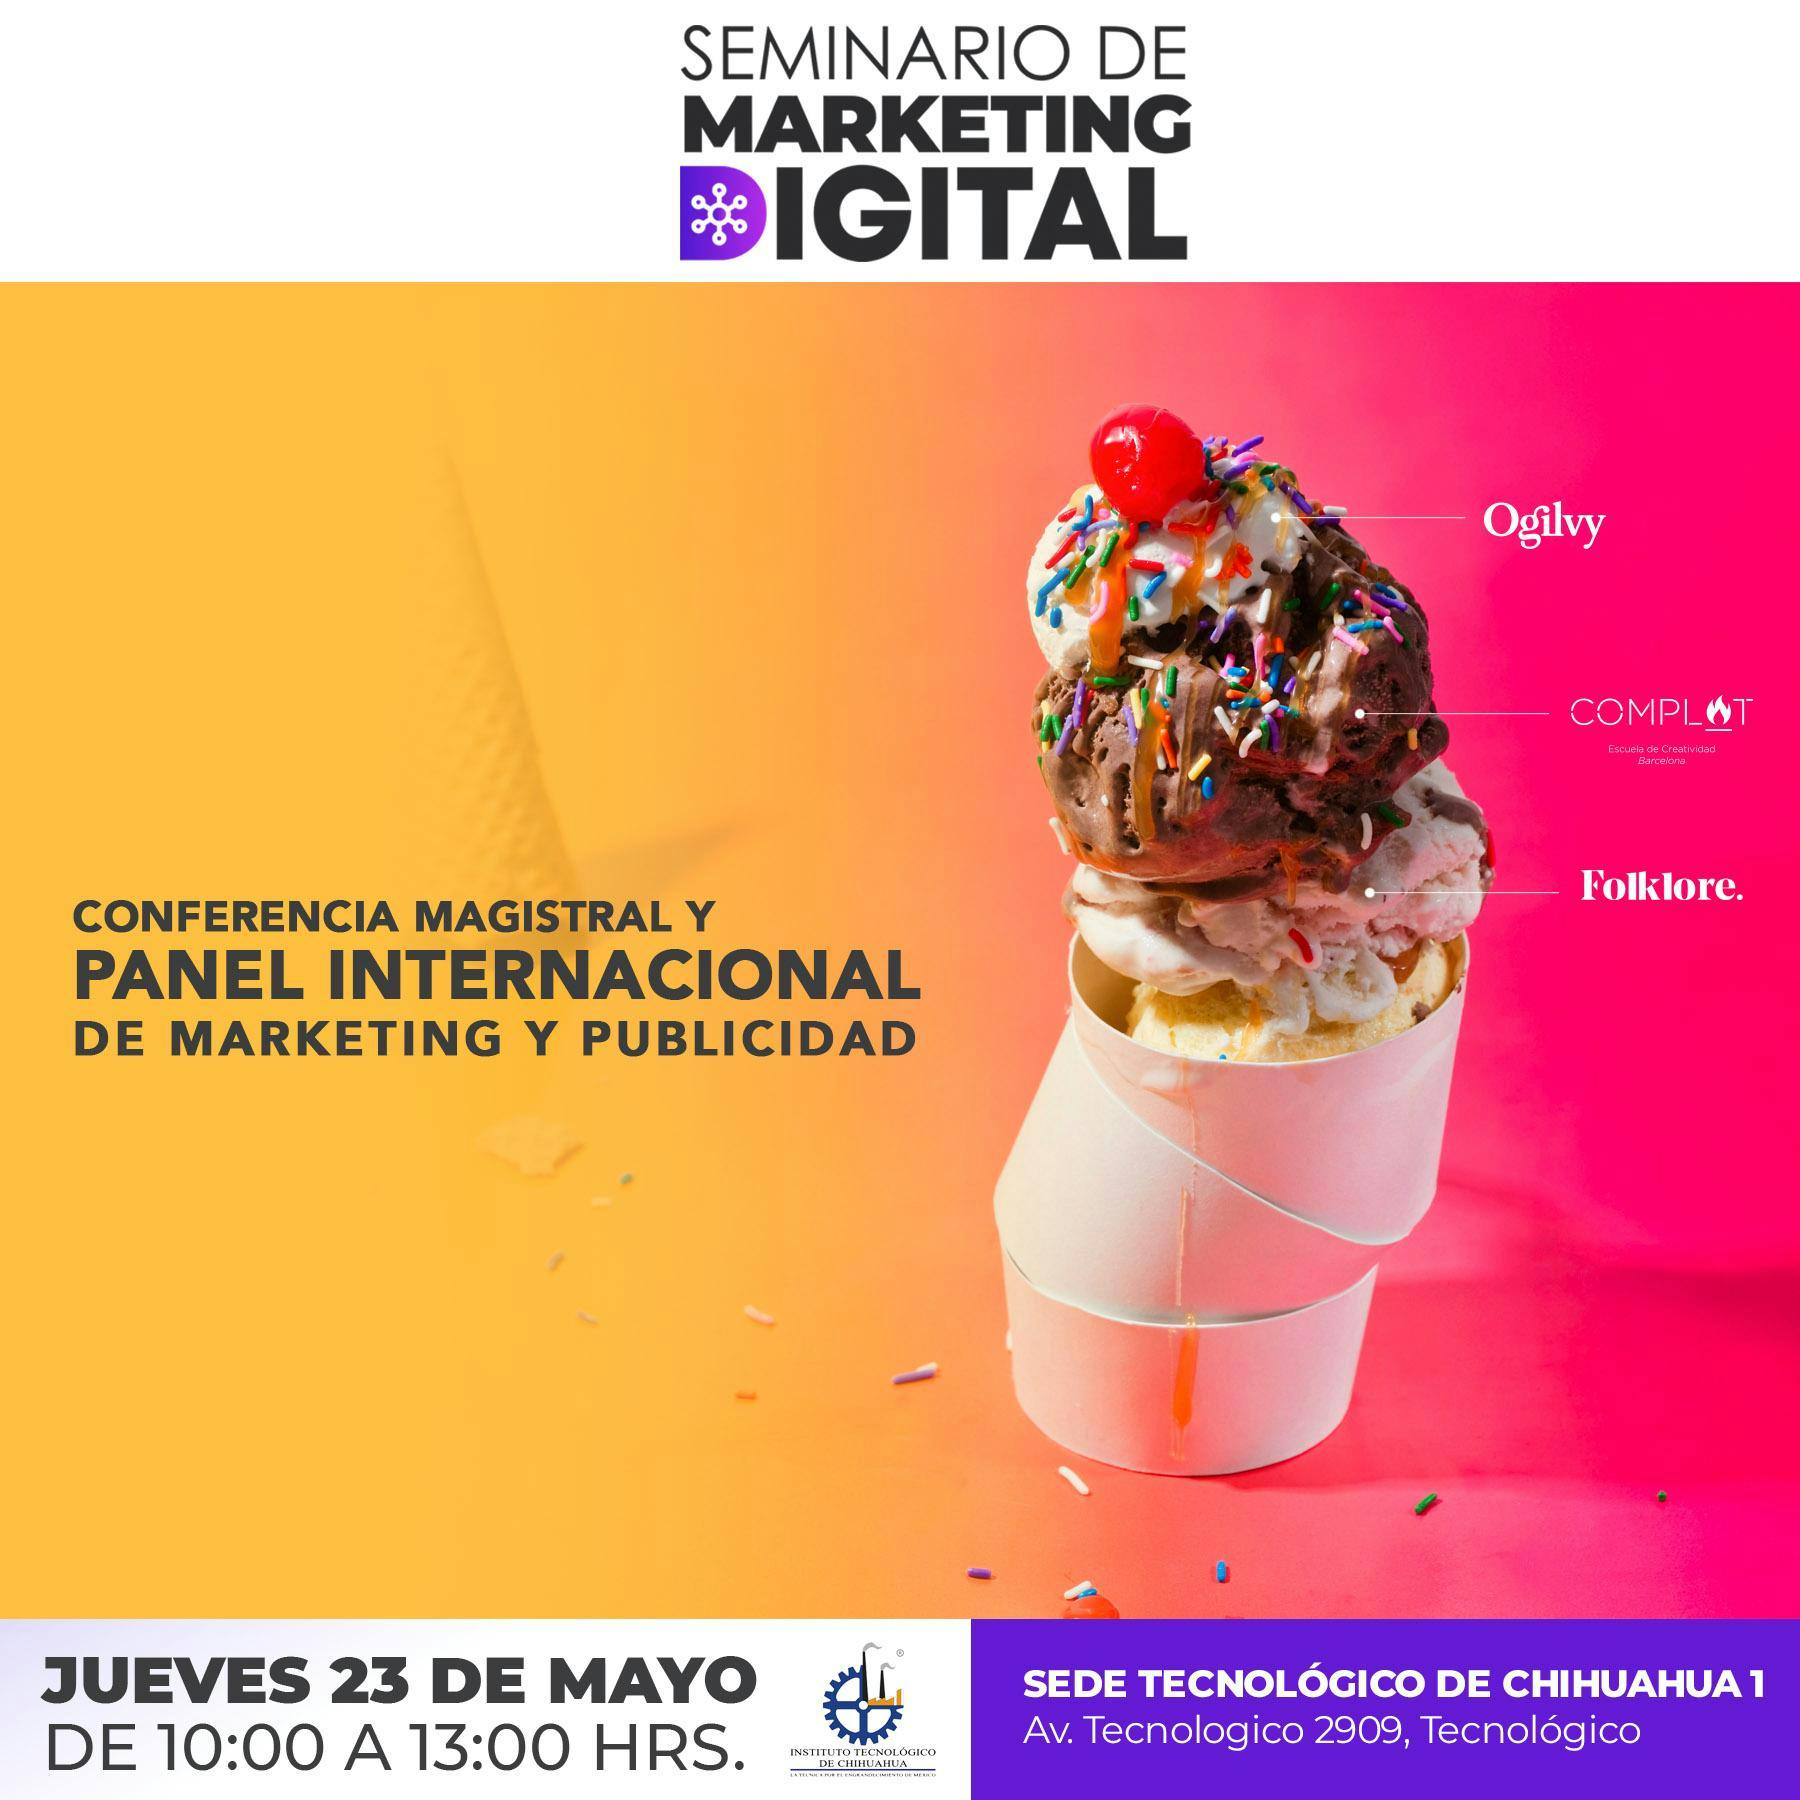 Conferencia magistral / Panel internacional de Marketing y Publicidad